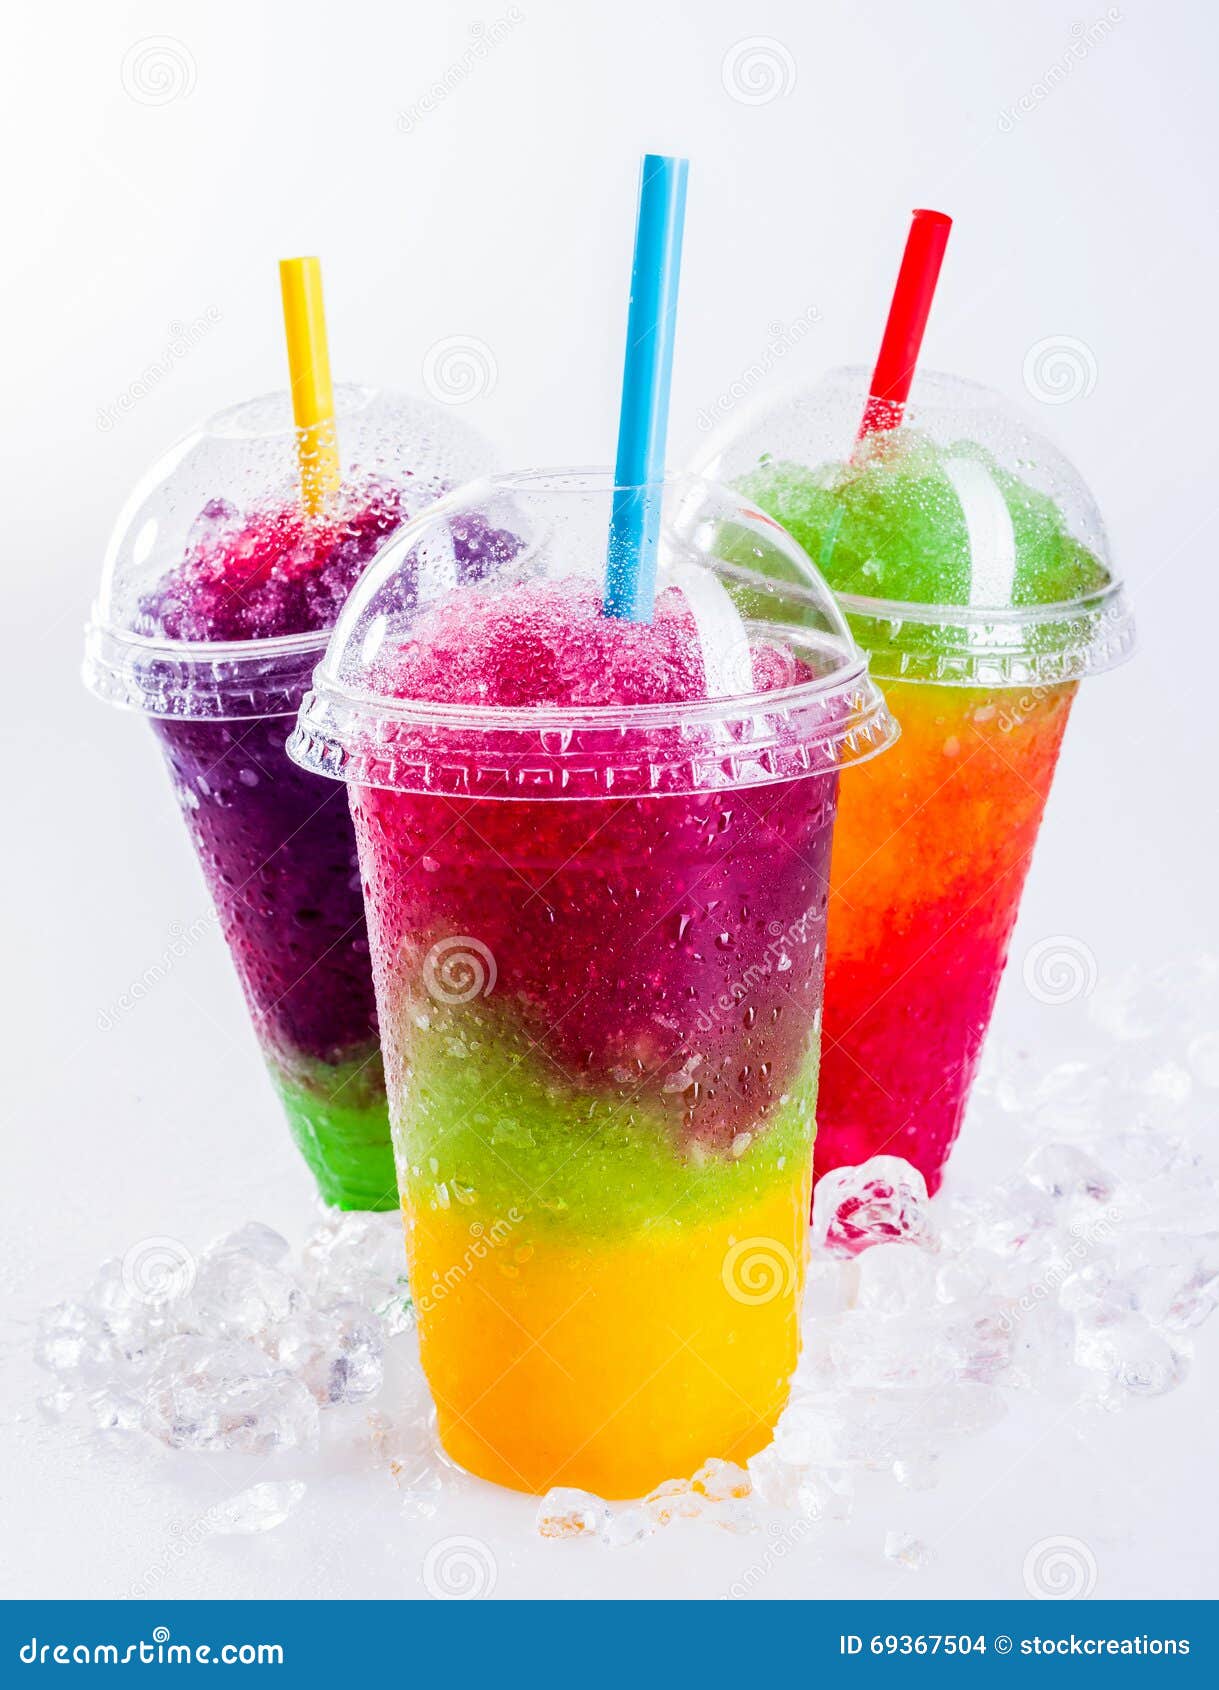 frozen rainbow slush drinks chilling on ice